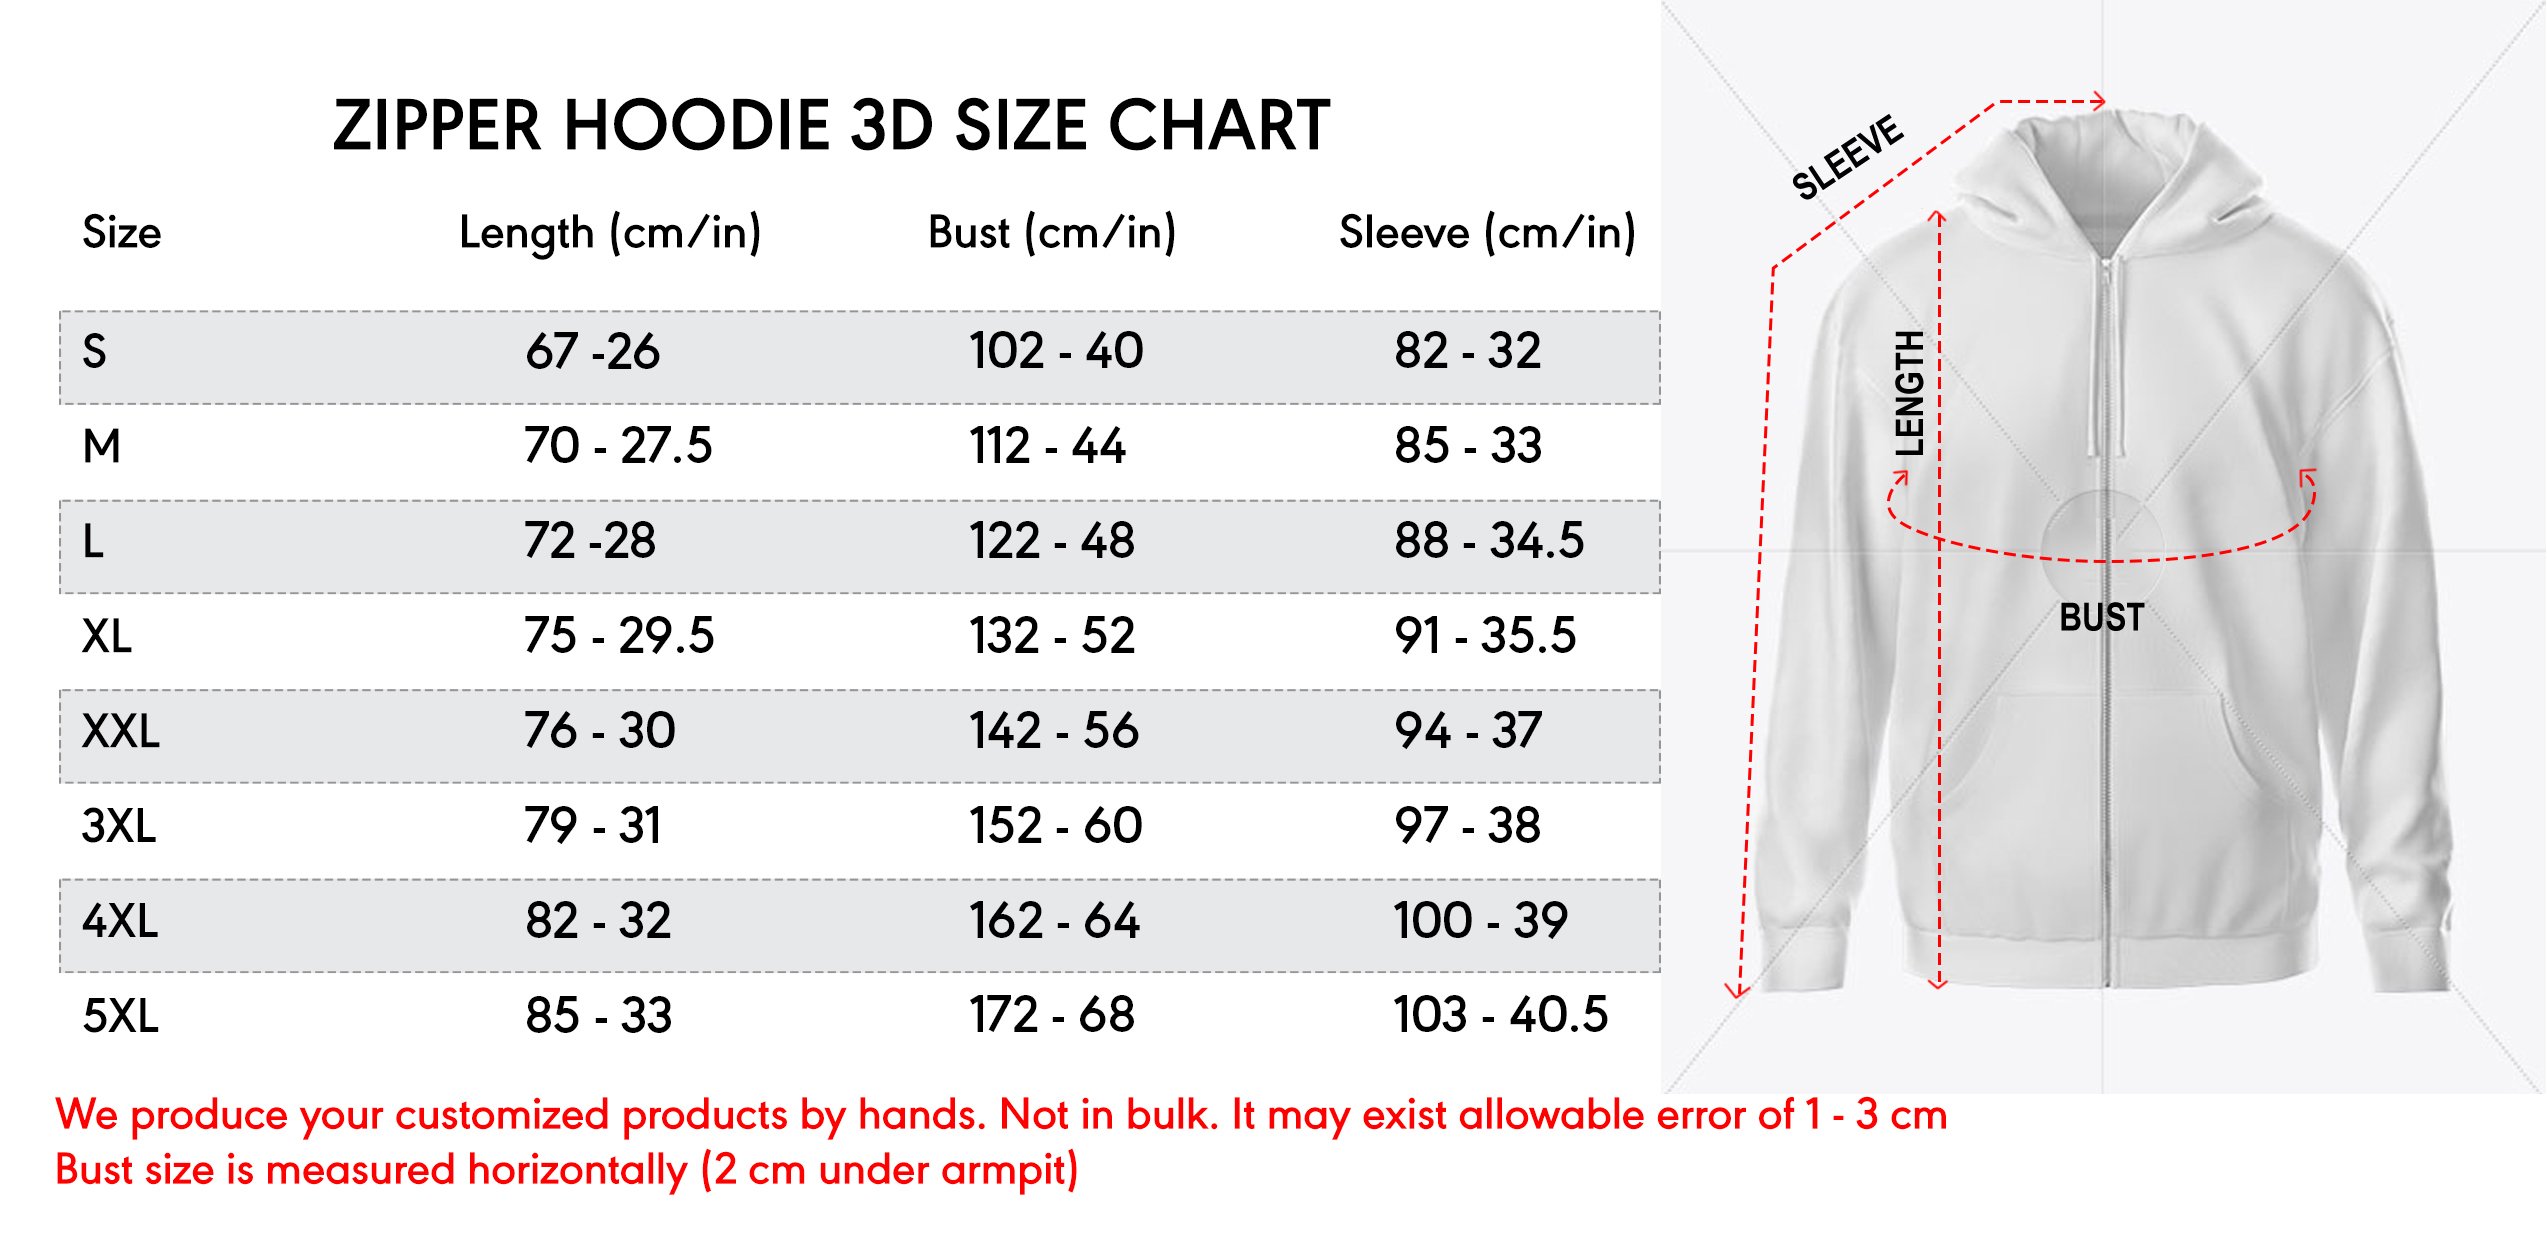 zip-hoodie-3d-size-chart-21-10-20